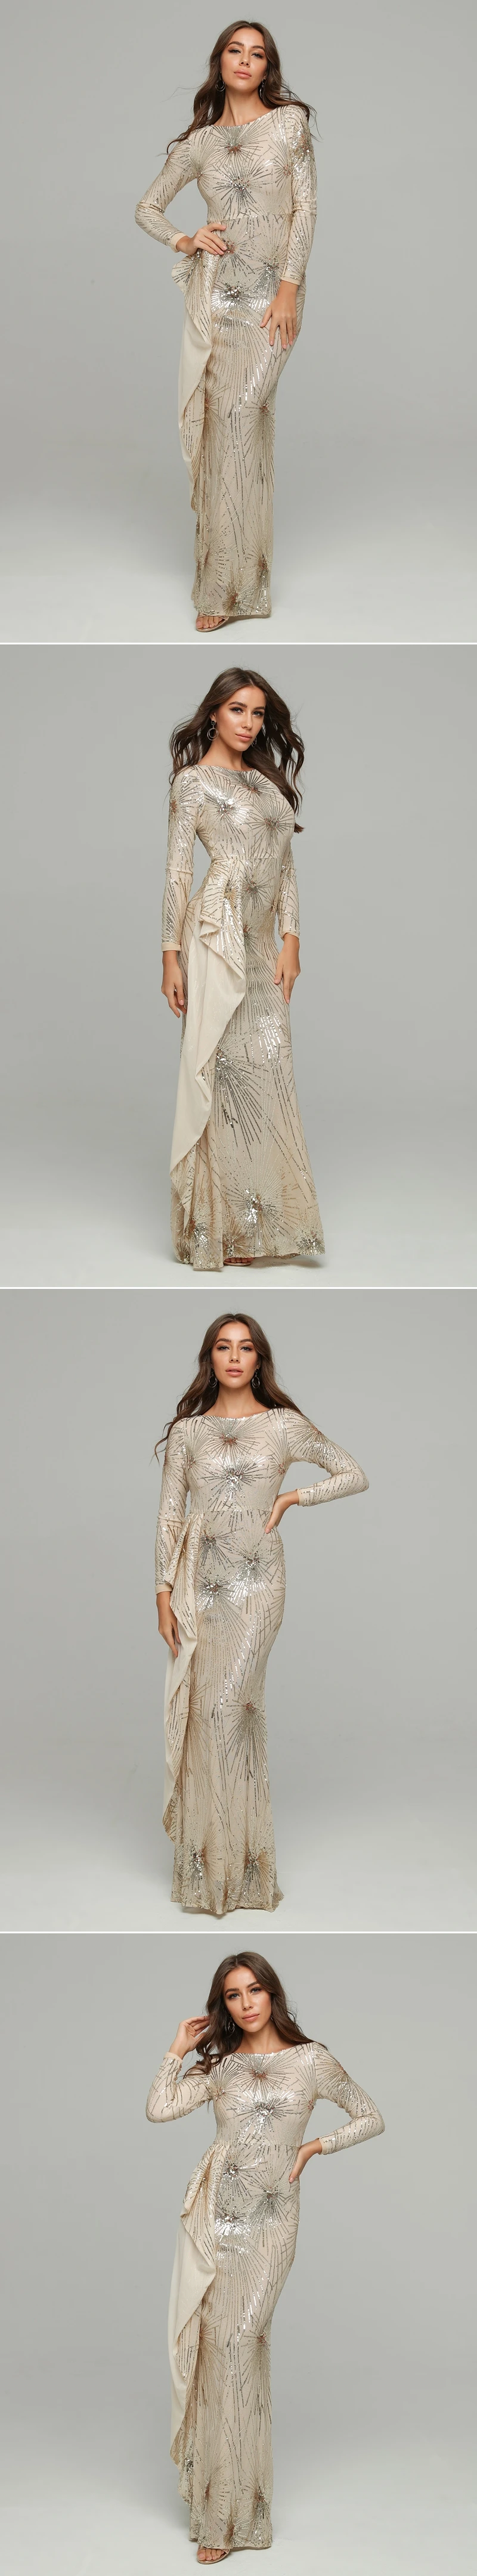 VC,, новое шикарное платье с пайетками, украшенное сеткой, с длинными рукавами, с круглым вырезом, вечерние платья знаменитостей